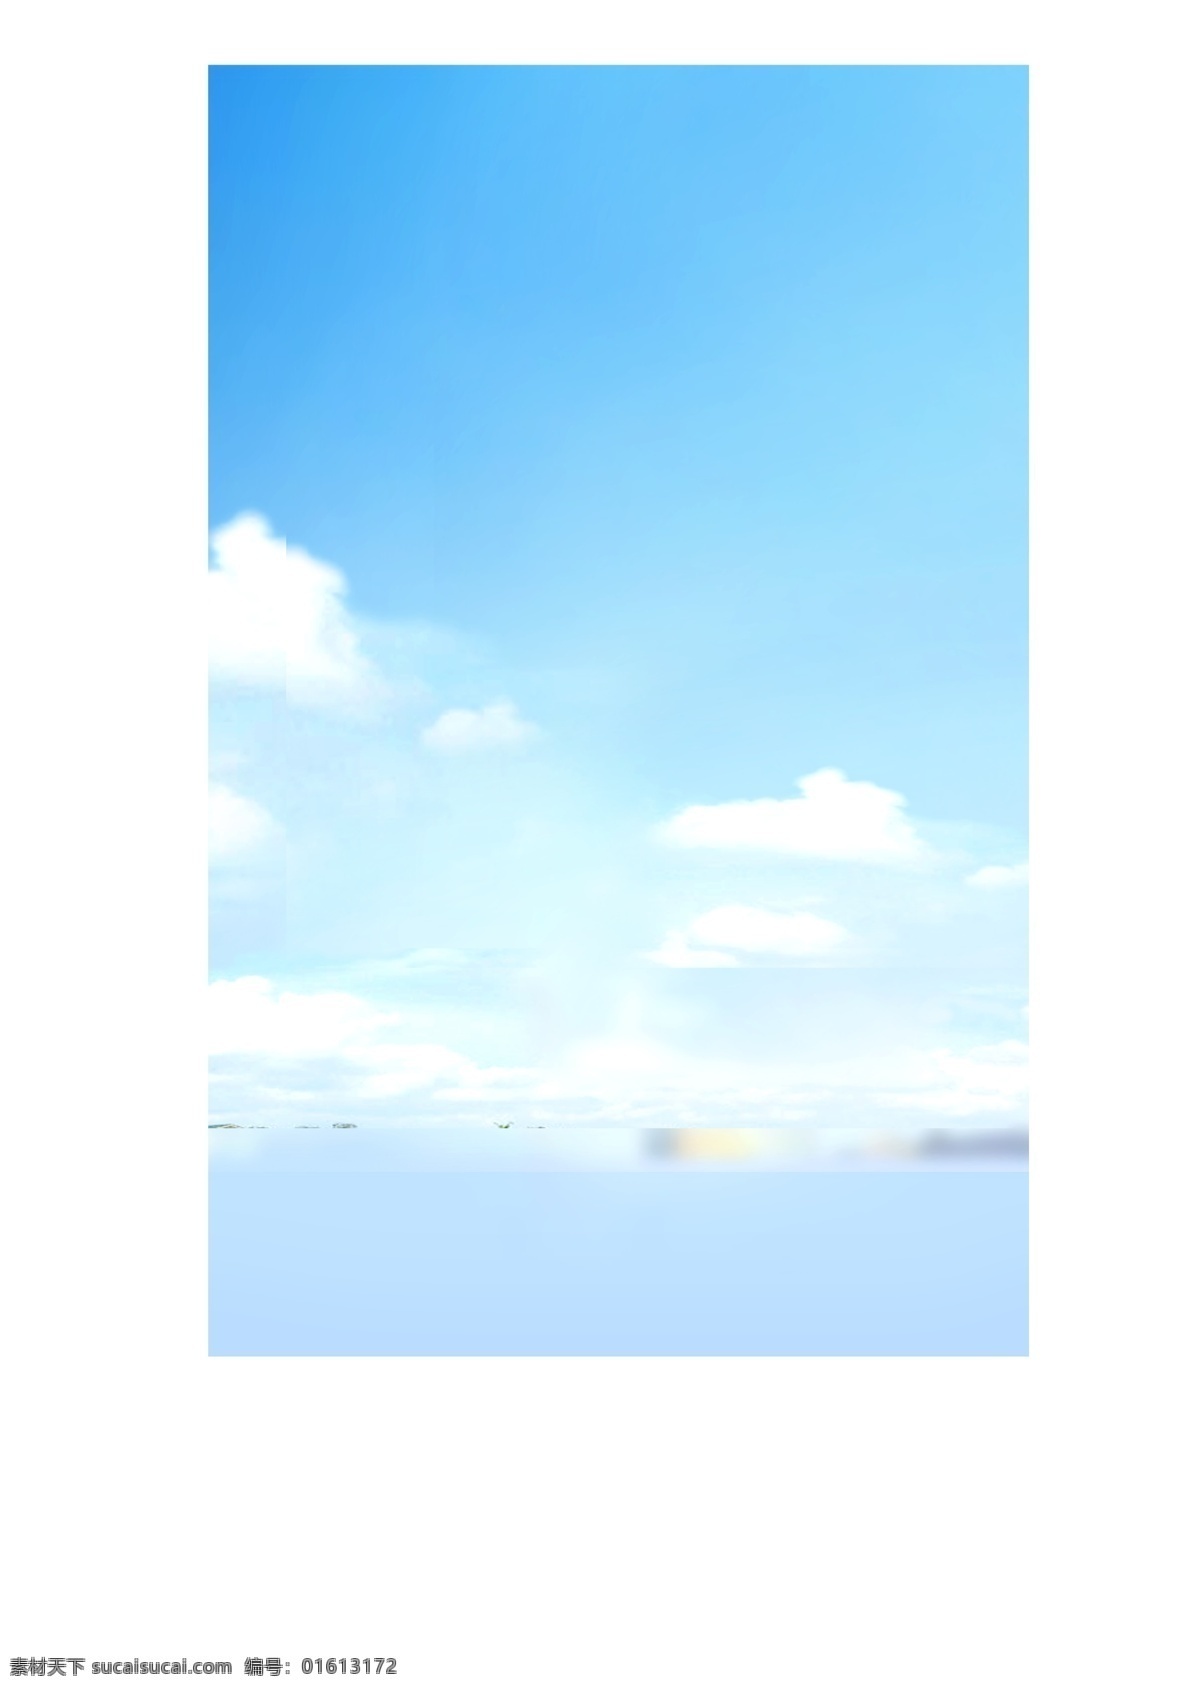 景观效果图 天空 背景素材 高清 云朵 蓝天 后期素材 环境设计 景观设计